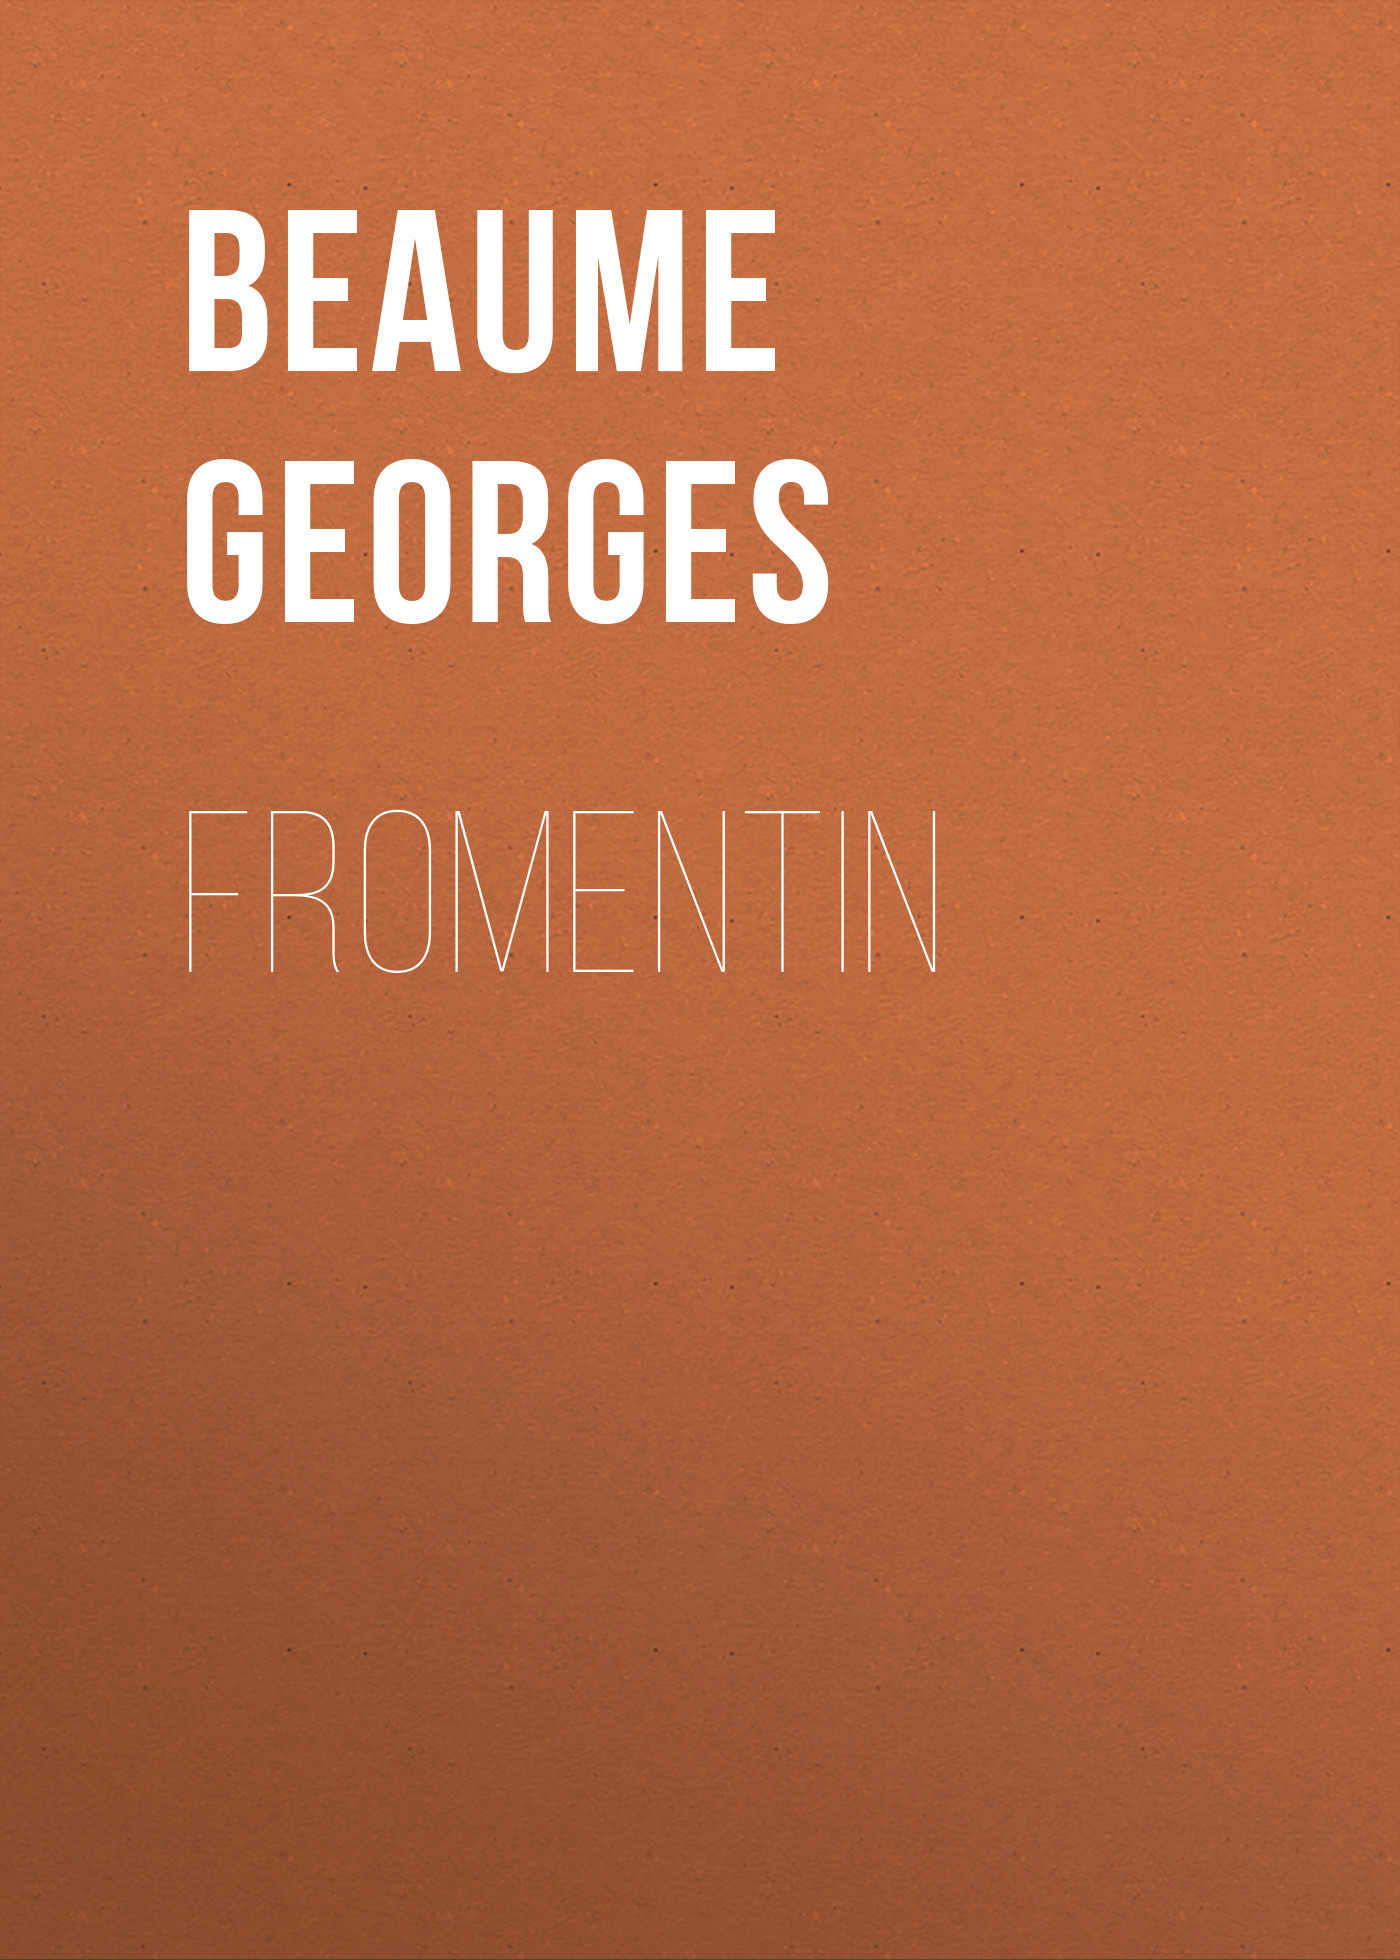 Книга Fromentin из серии , созданная Georges Beaume, может относится к жанру Зарубежная старинная литература, Зарубежная классика. Стоимость электронной книги Fromentin с идентификатором 24174452 составляет 0 руб.